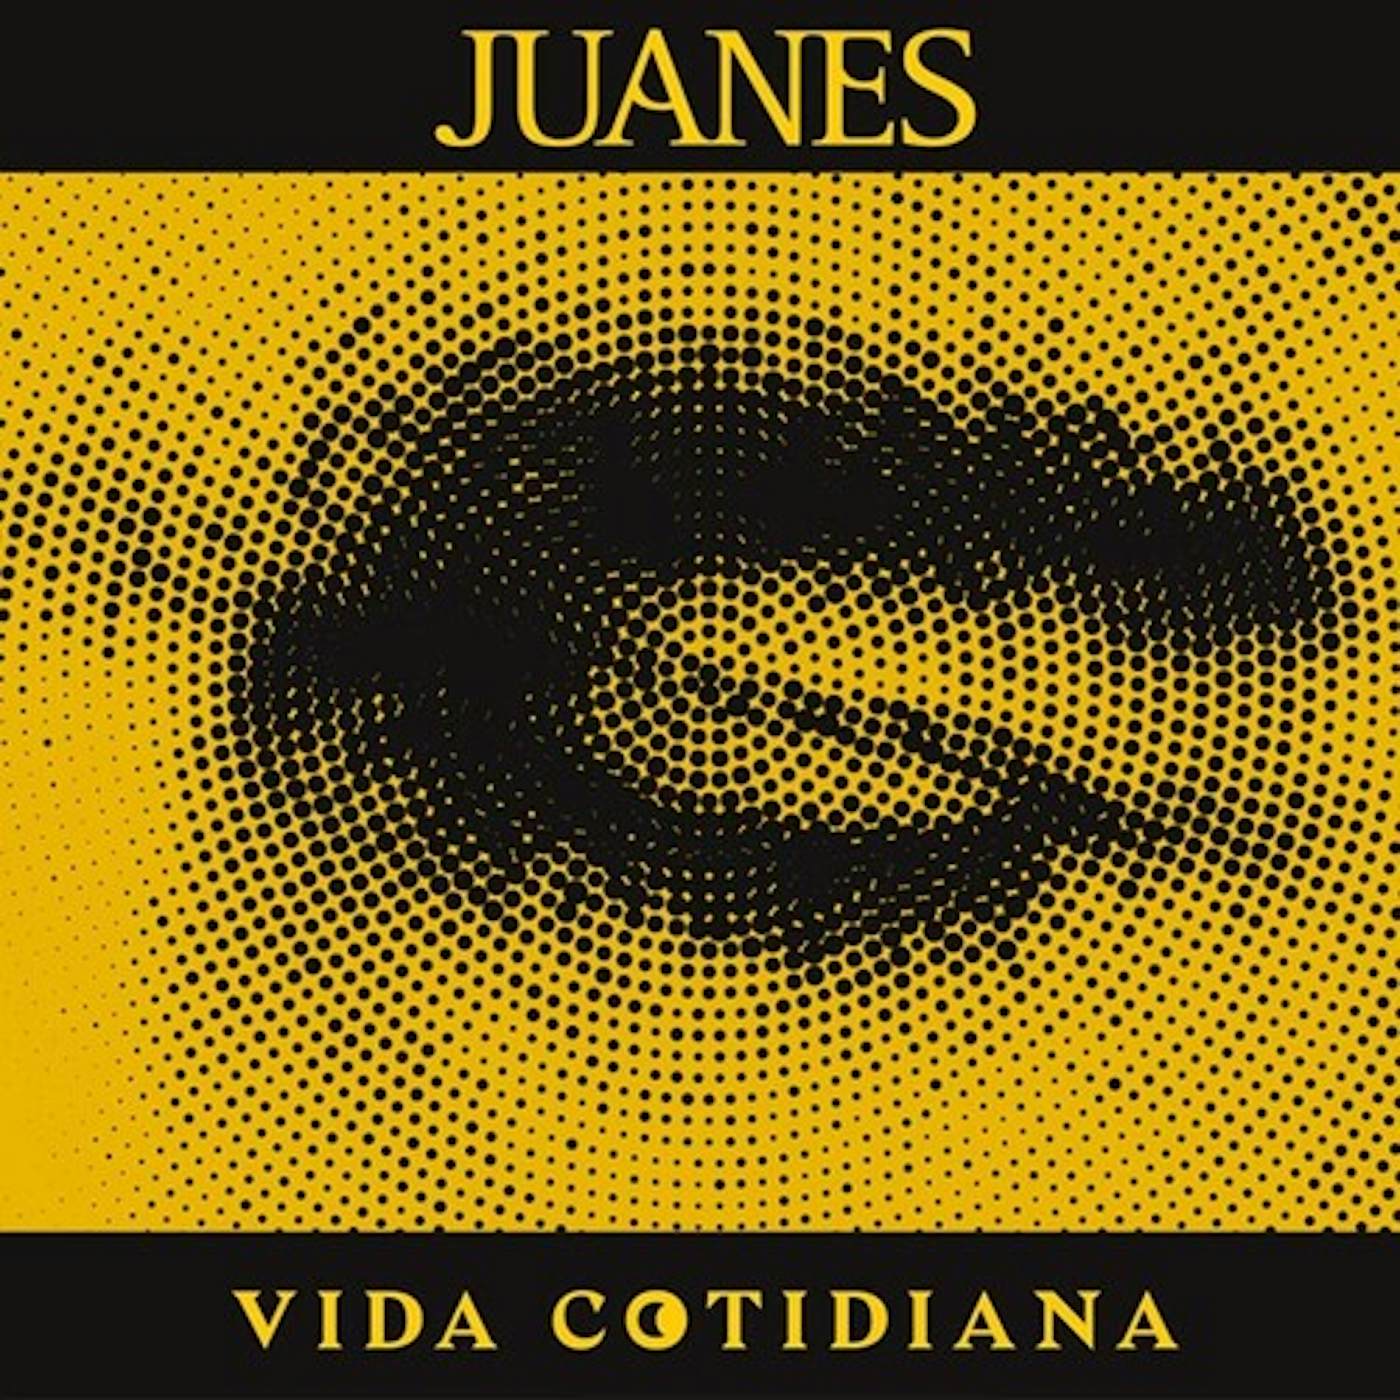 Juanes VIDA COTIDIANA Vinyl Record